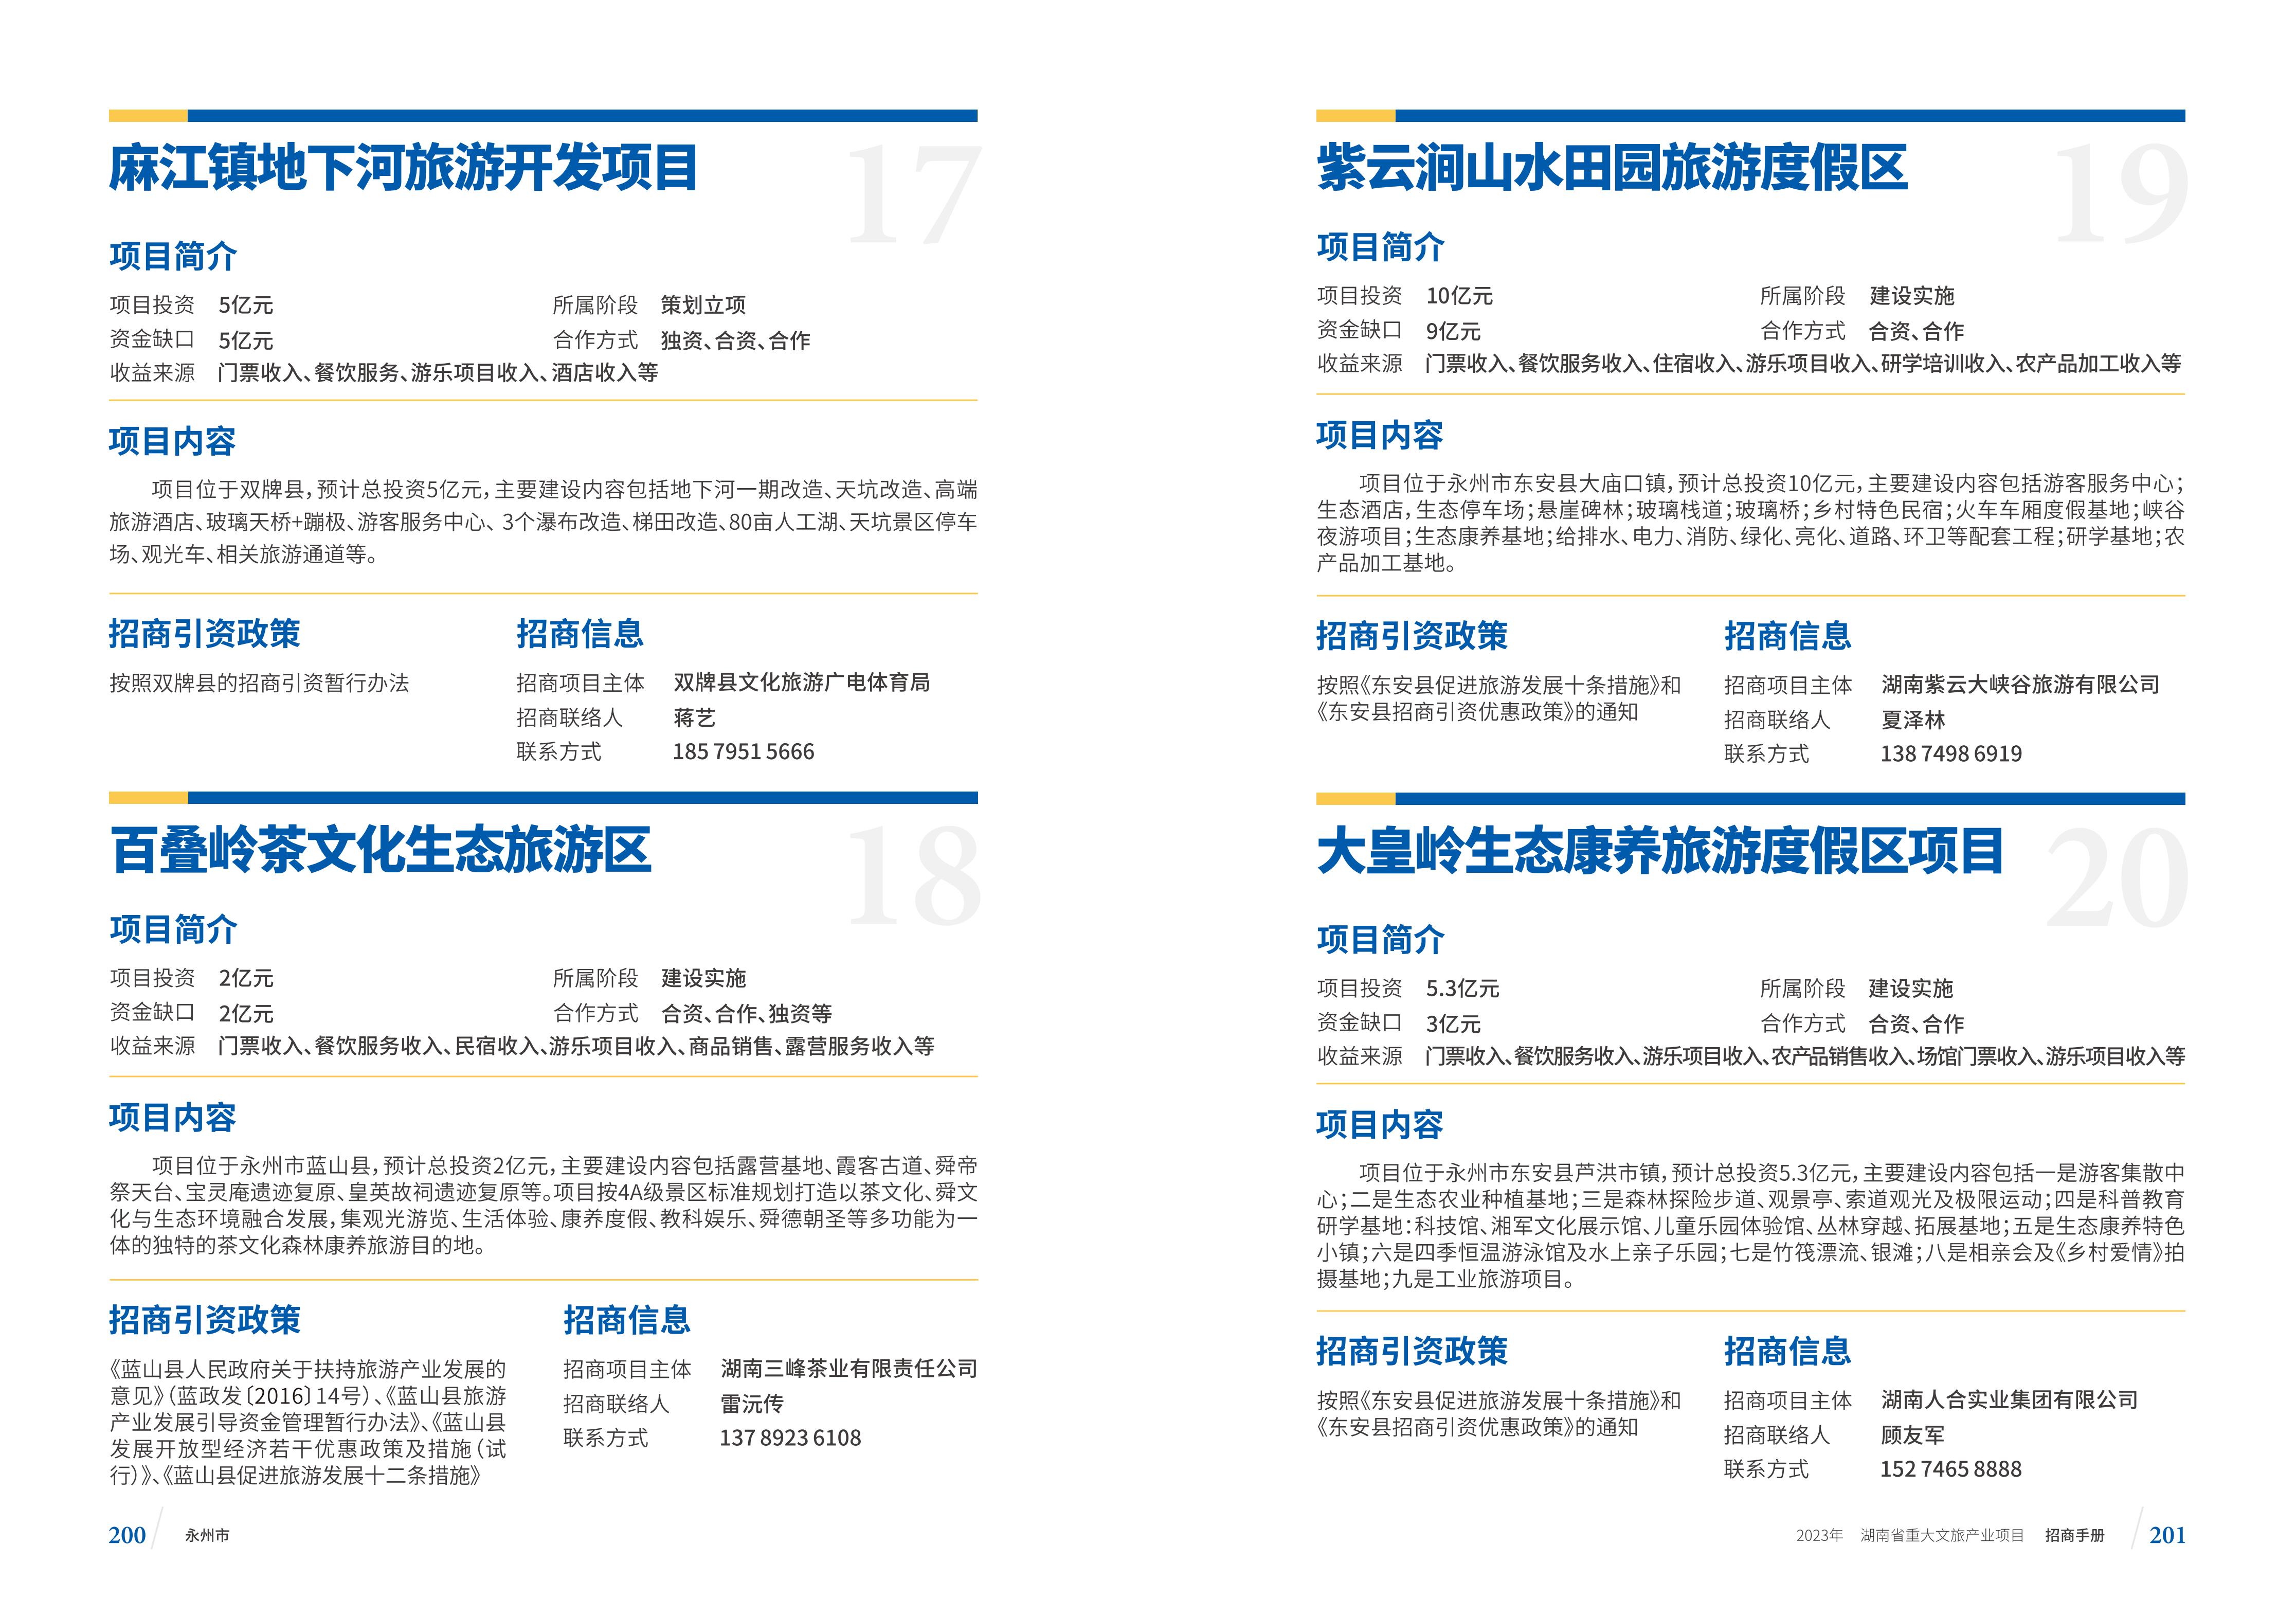 湖南省重大文旅产业项目招手册线上链接版_108.jpg